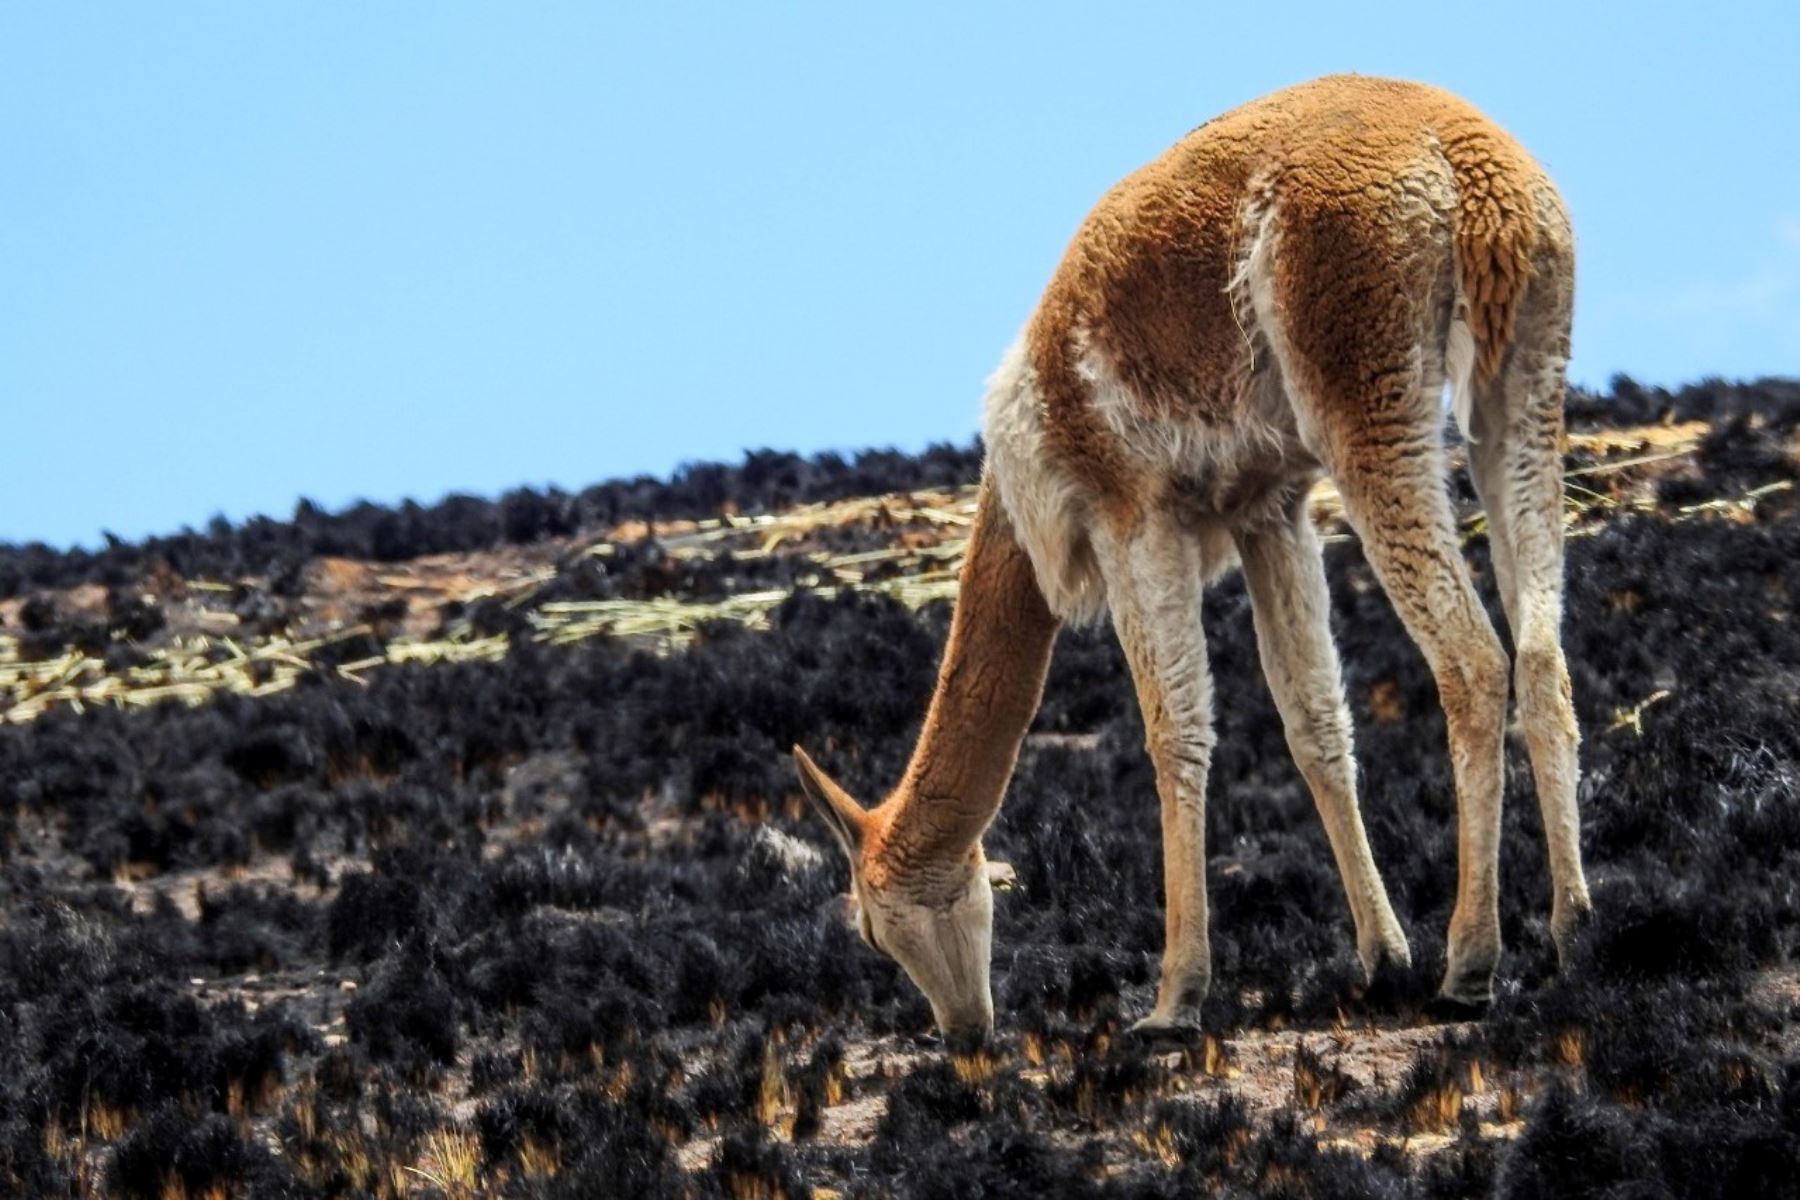 El fuego dejó graves daños en la reserva de vicuñas Pumawasi Pomacanchi. Foto: ANDINA/Percy Hurtado Santillán.